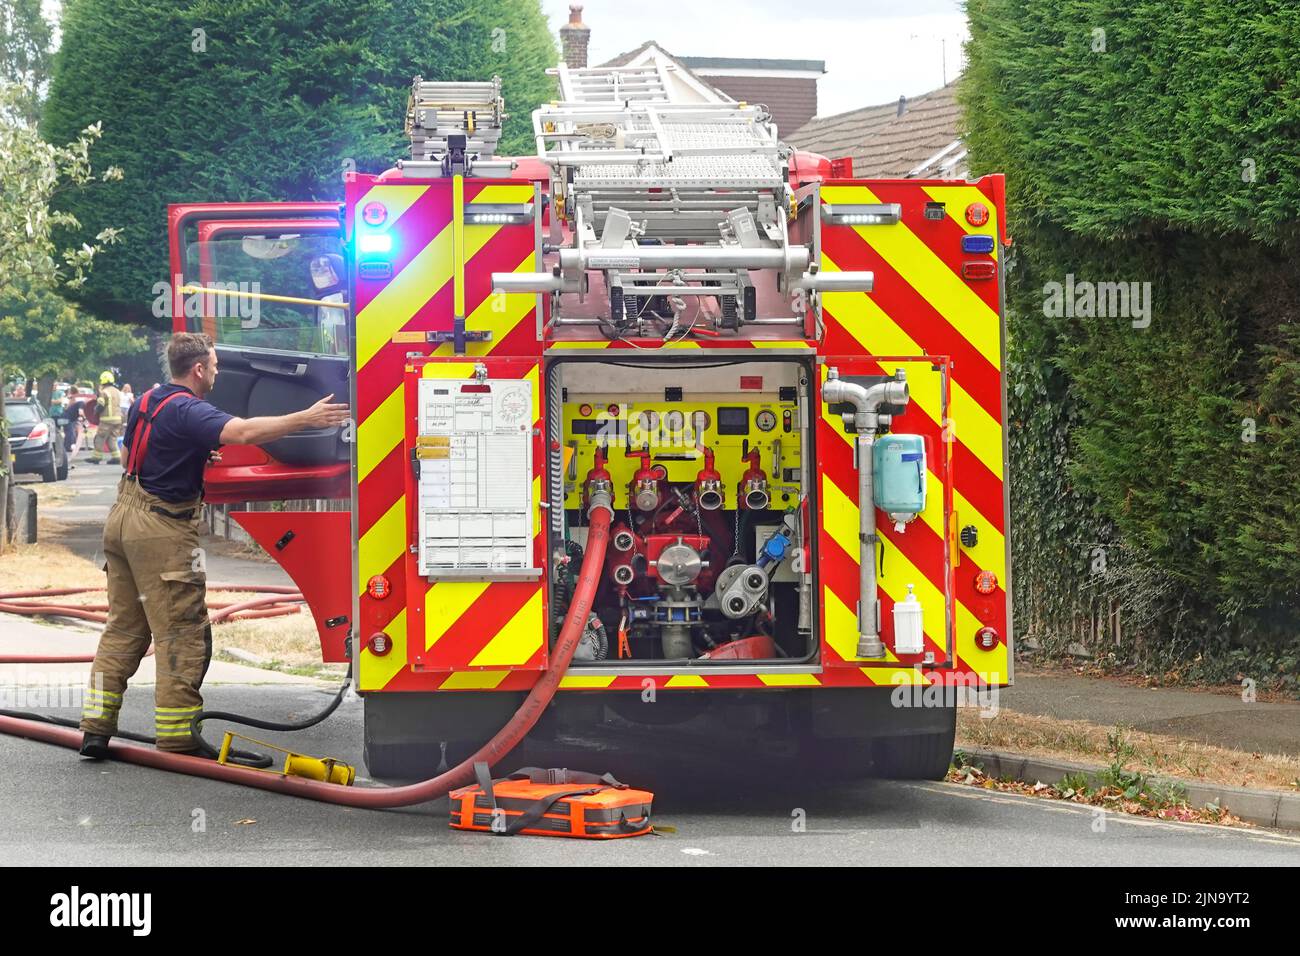 Essex Fire and Rescue Service dans le bâtiment de la maison en cas d'incendie vue rapprochée derrière les vannes des moteurs des pompiers avec raccord de tuyau et pompier Angleterre Royaume-Uni Banque D'Images